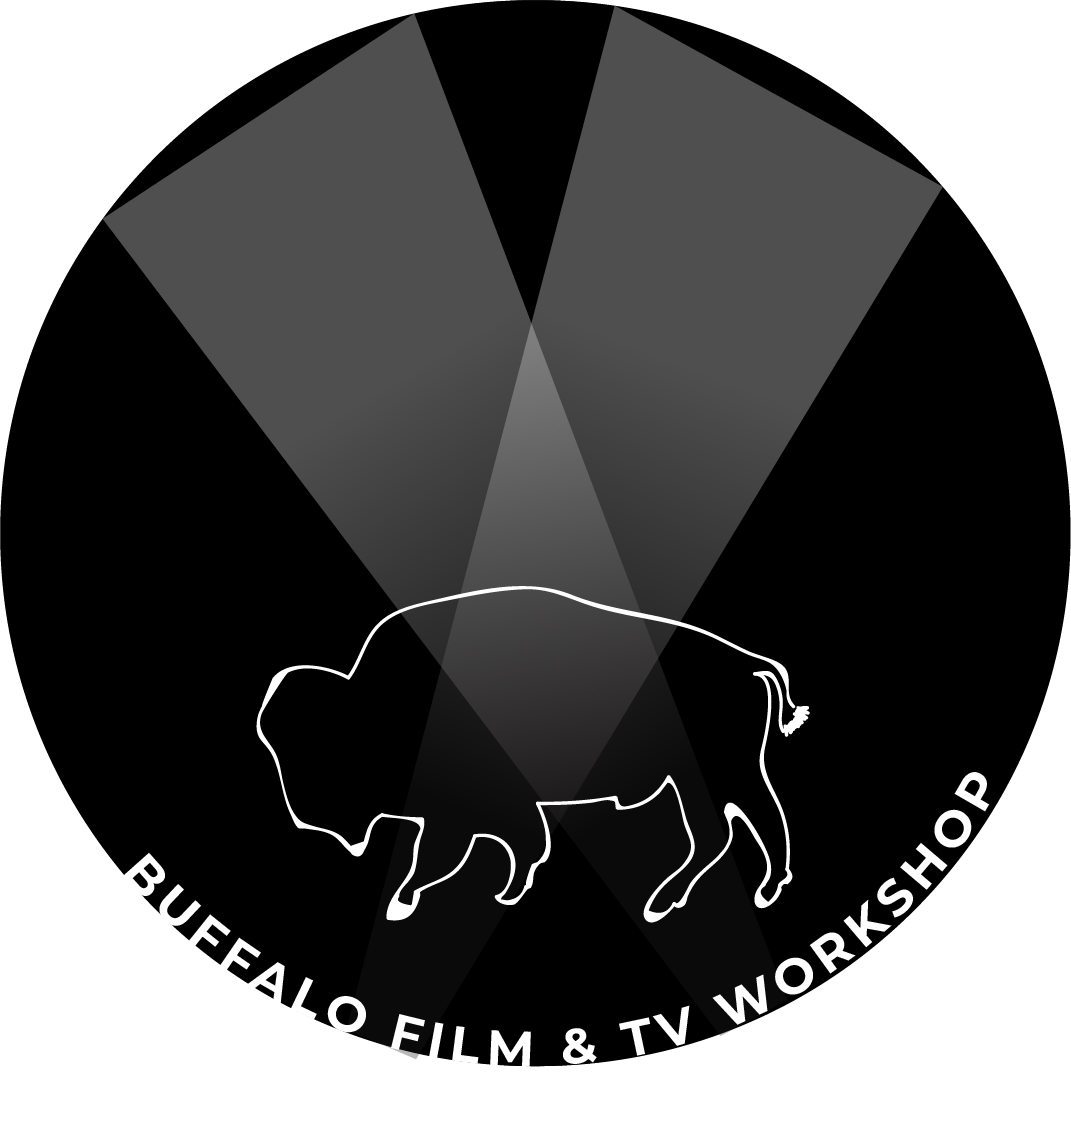 BUFFALO FILM & TV WORKSHOP